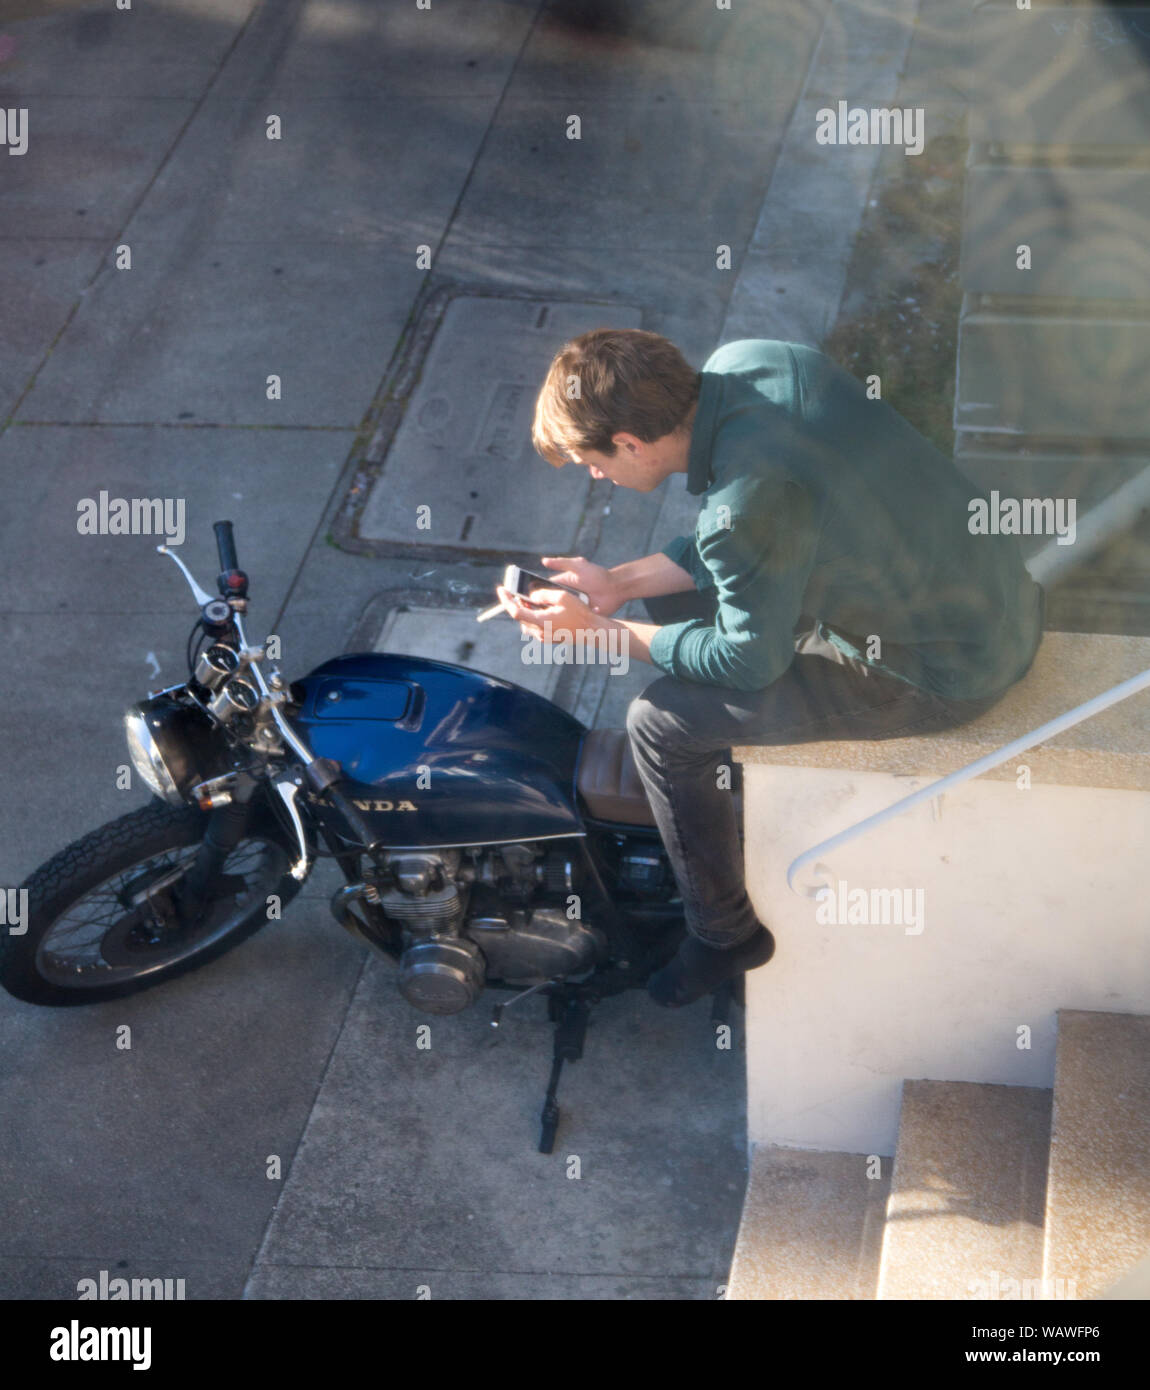 San Francisco, CA - 21 mai 2016 : Un homme fume une cigarette tout en regardant son iPhone à San Francisco. Banque D'Images